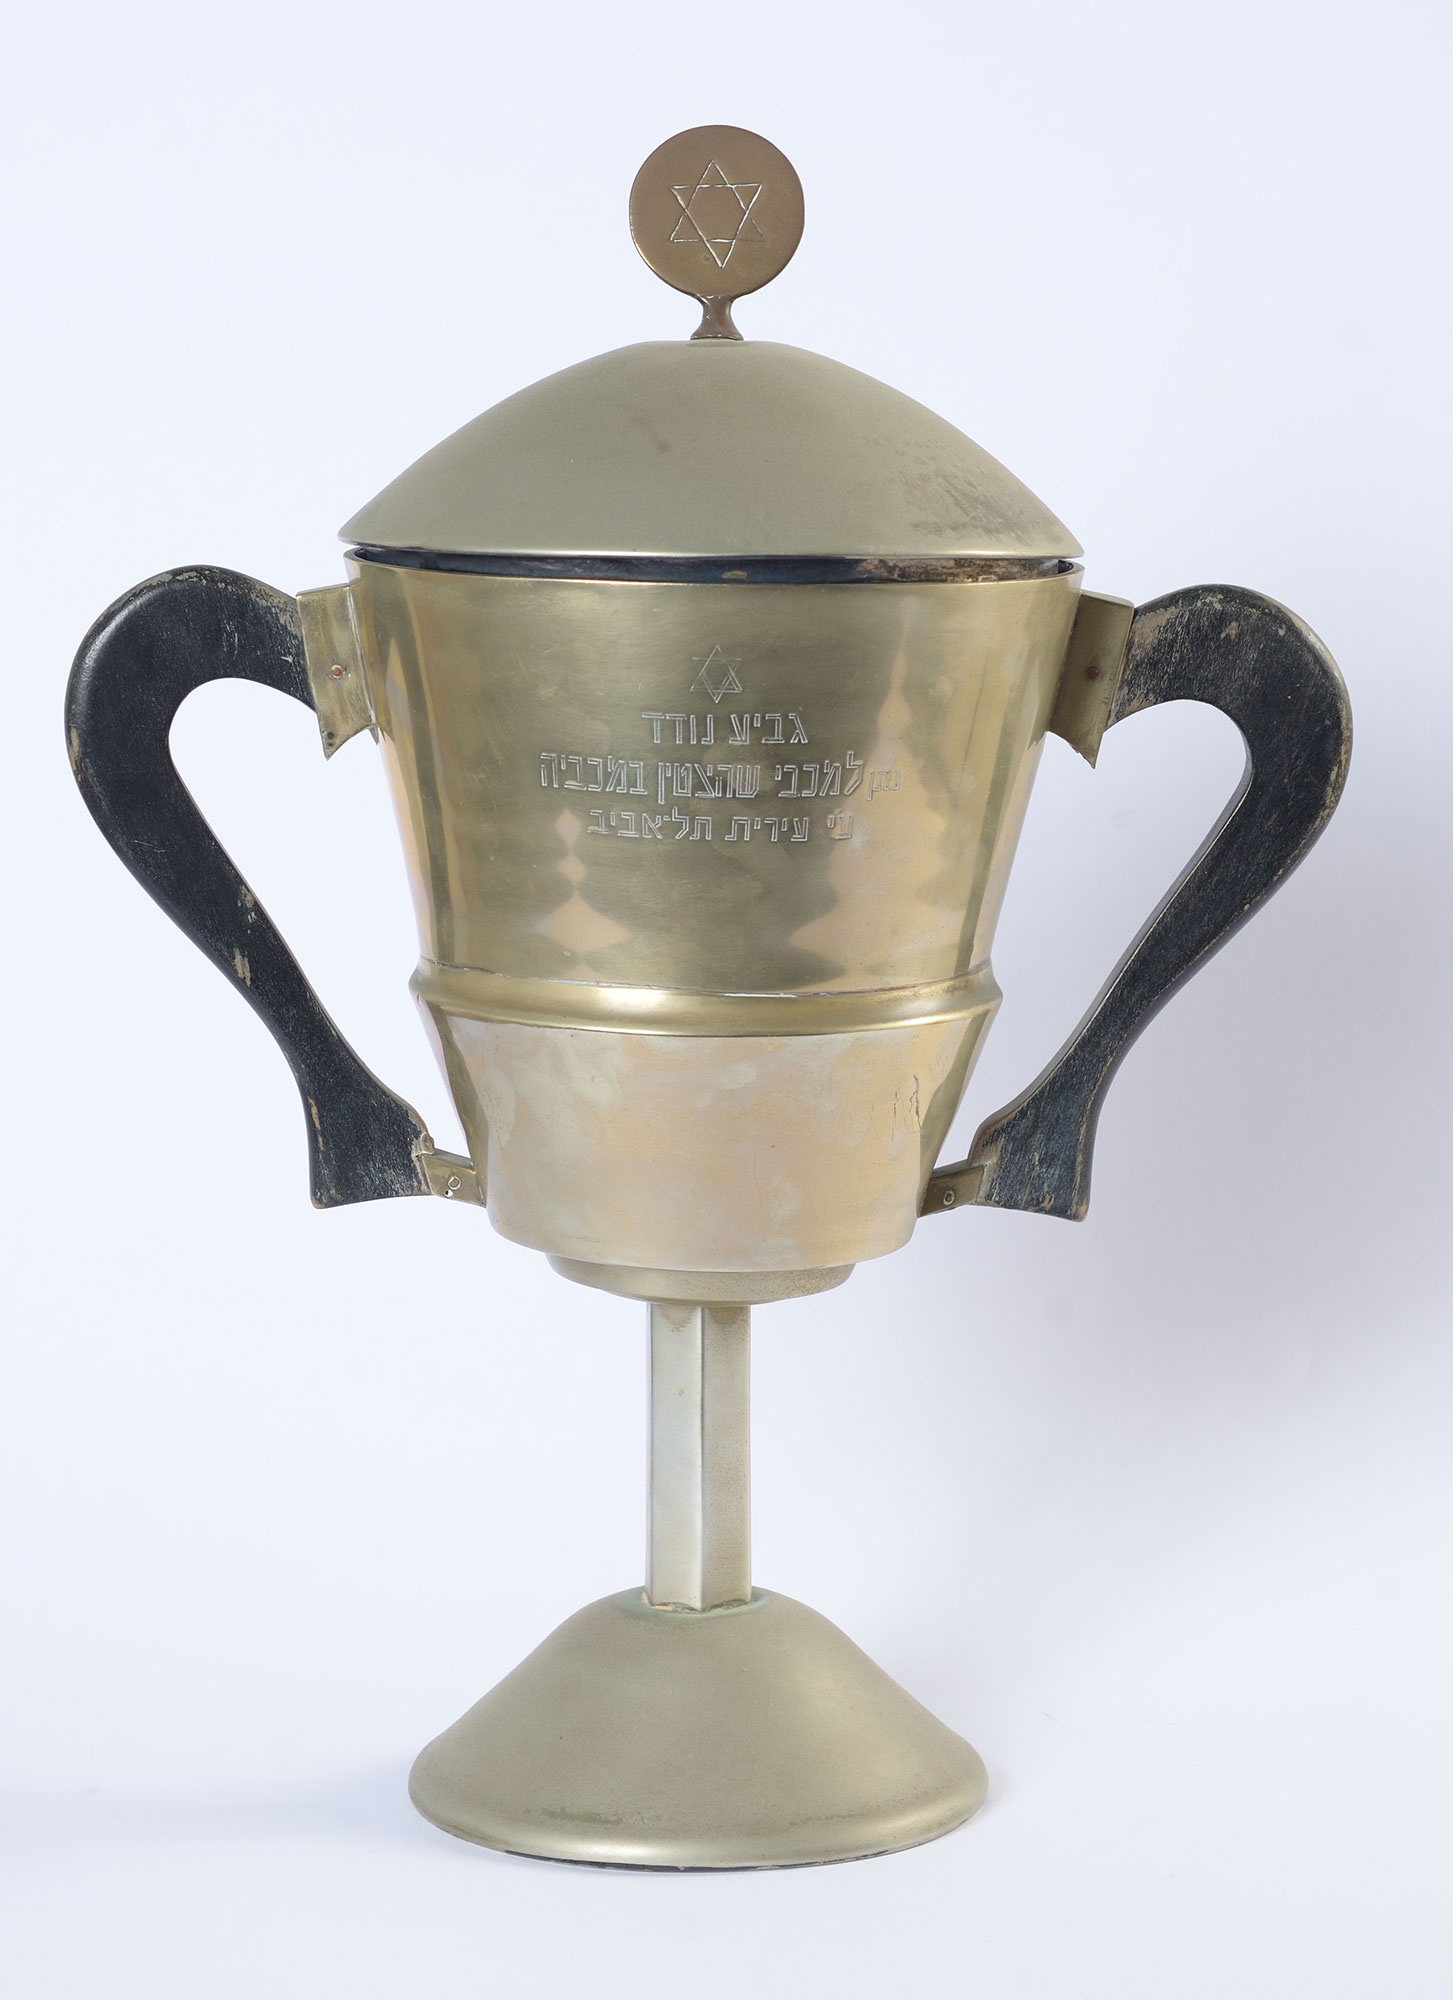 גביע מצטיין המכביה, מתנת עיריית ת"א, אשר הוענק במכבייה בשנת 1935 לאתלטית מרילה פרייוואלד. מרילה פרייוואלד צמחה במועדון "מכבי קרקוב" והפכה לספורטאית מובילה בפולין